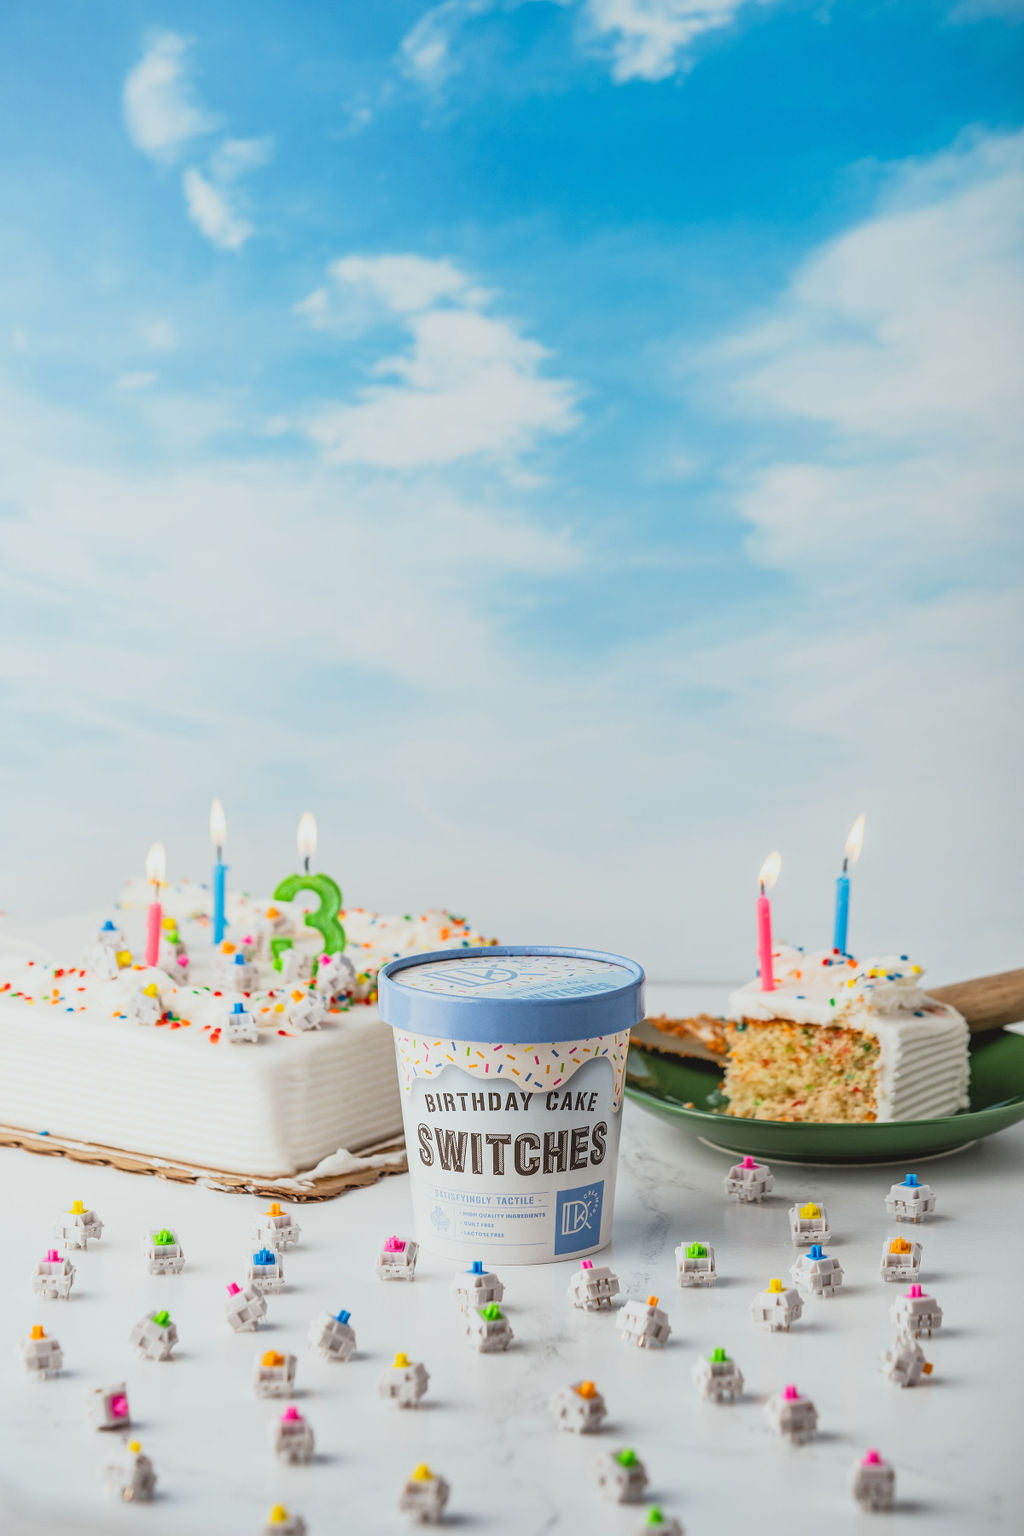 DK Creamery - Birthday Cake